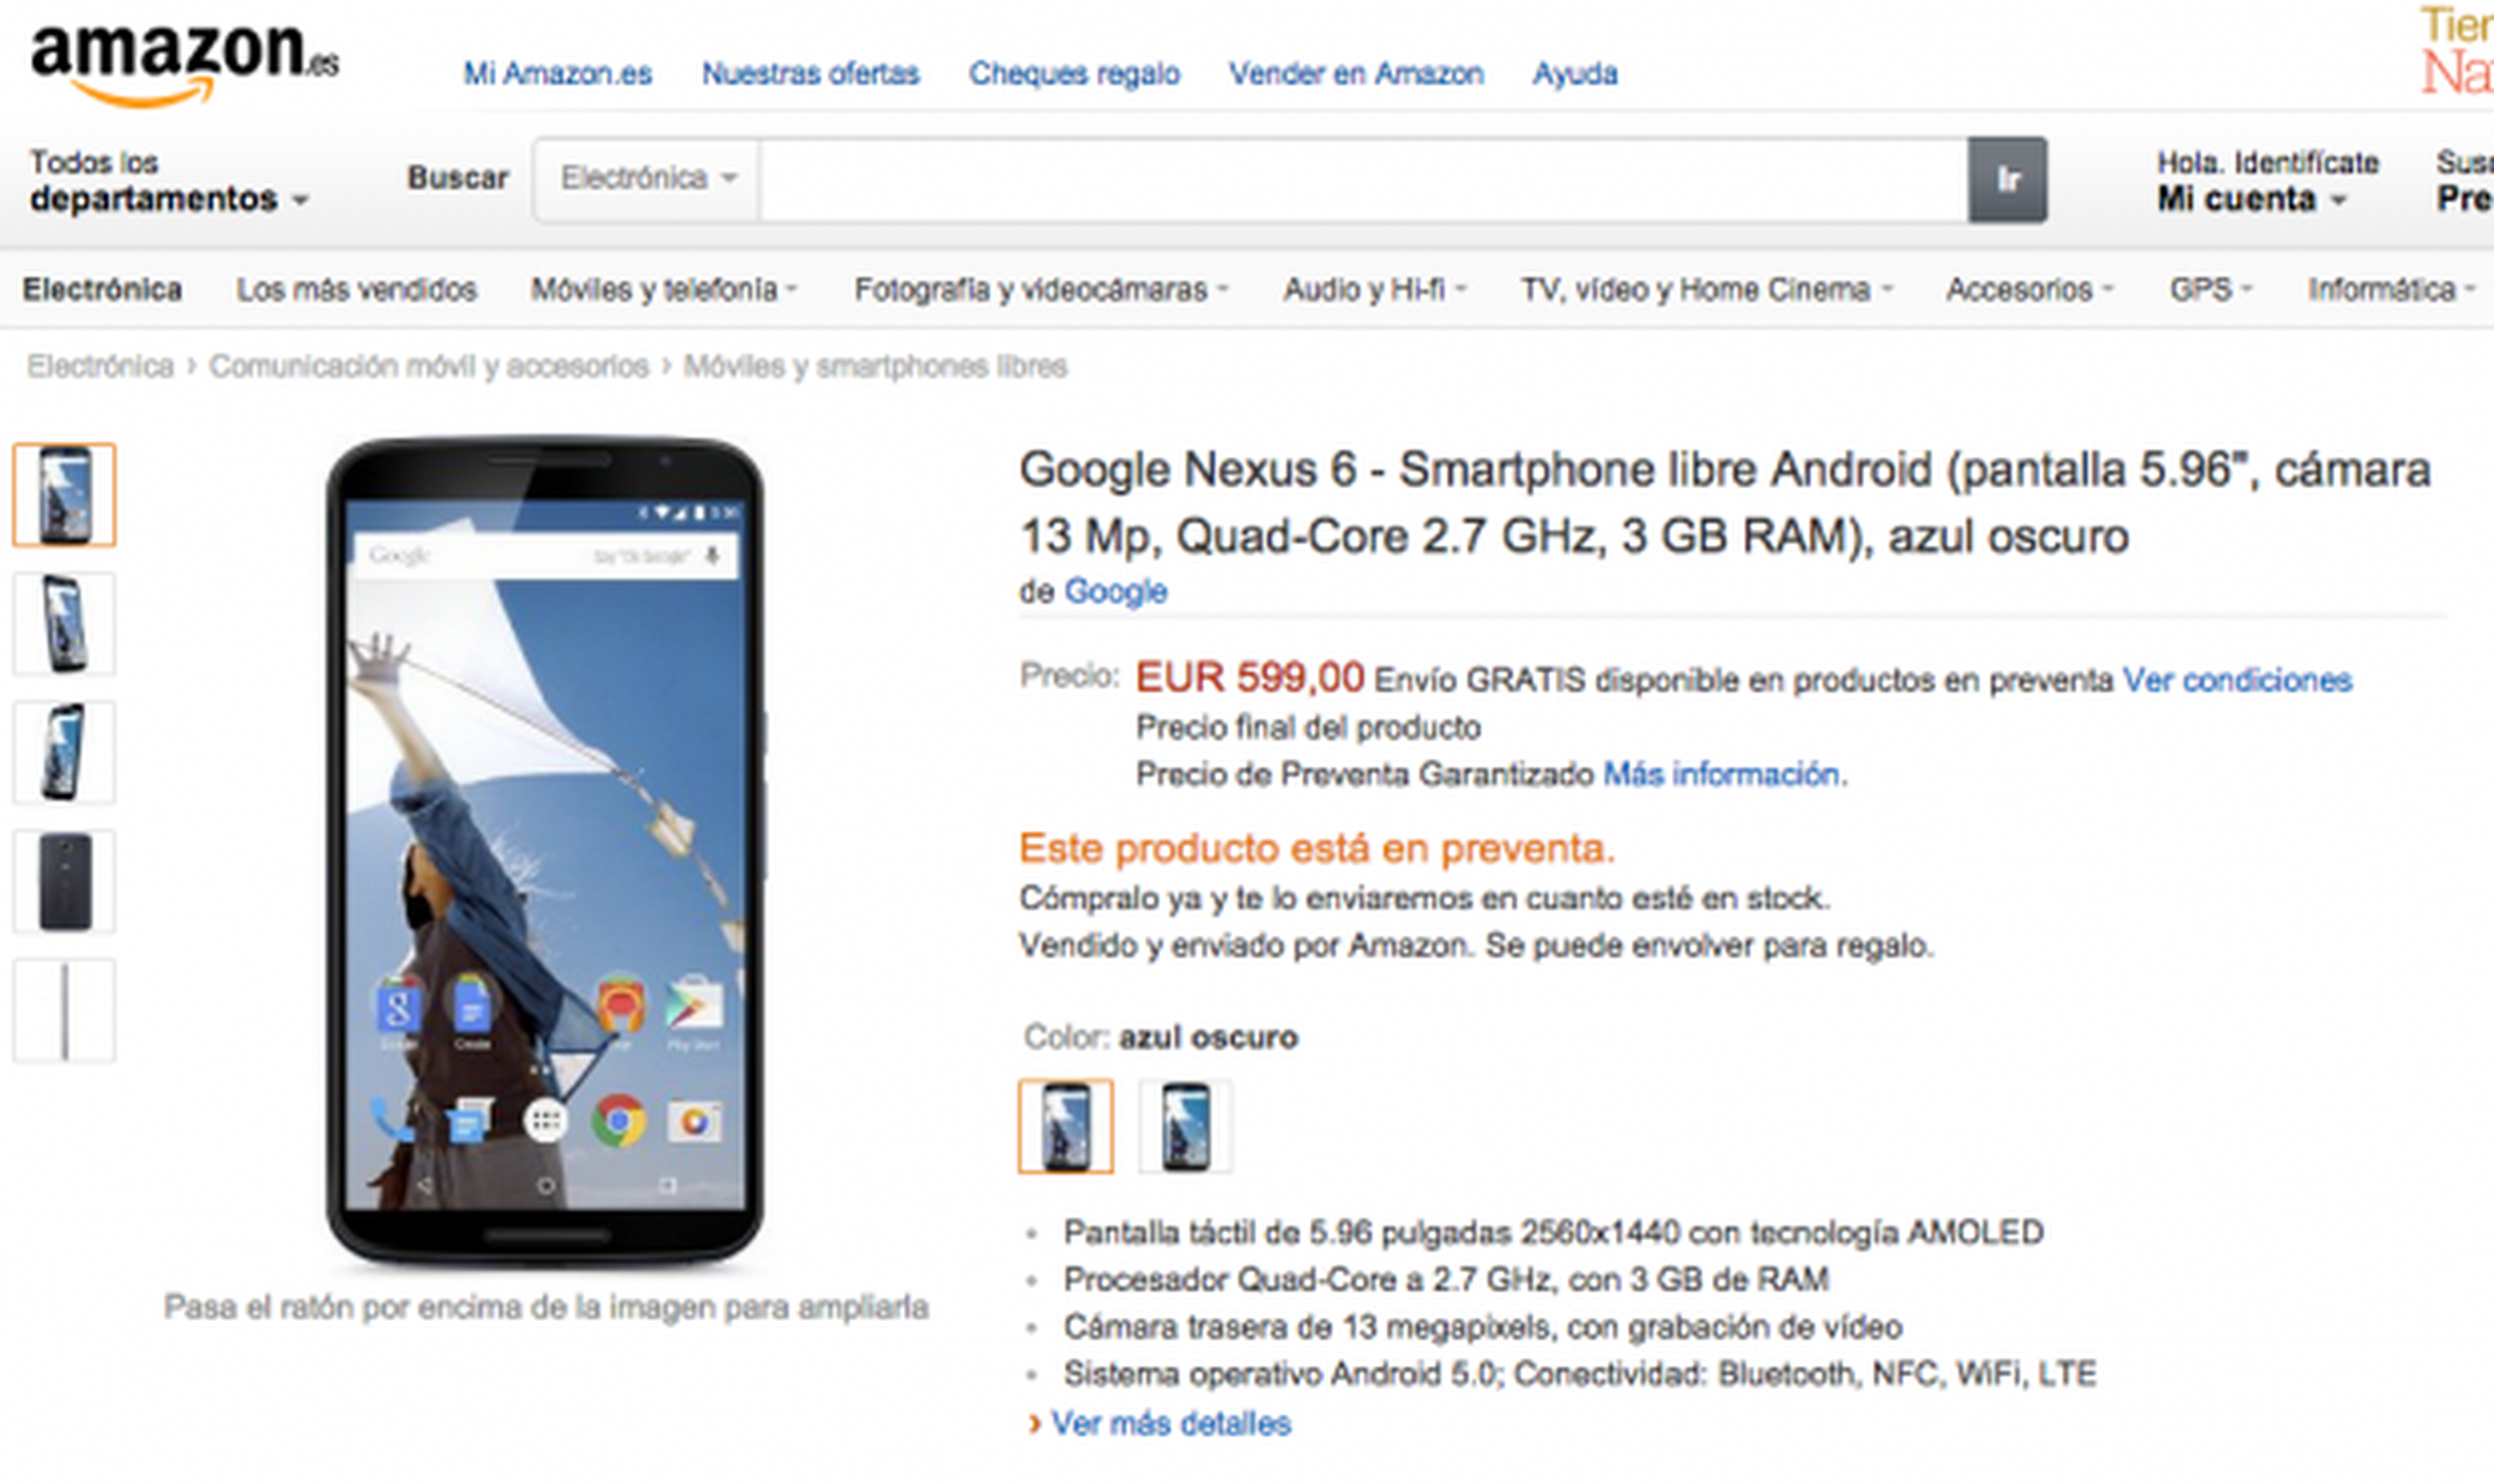 Nexus 6 ya está disponible en Google Play y Amazon España